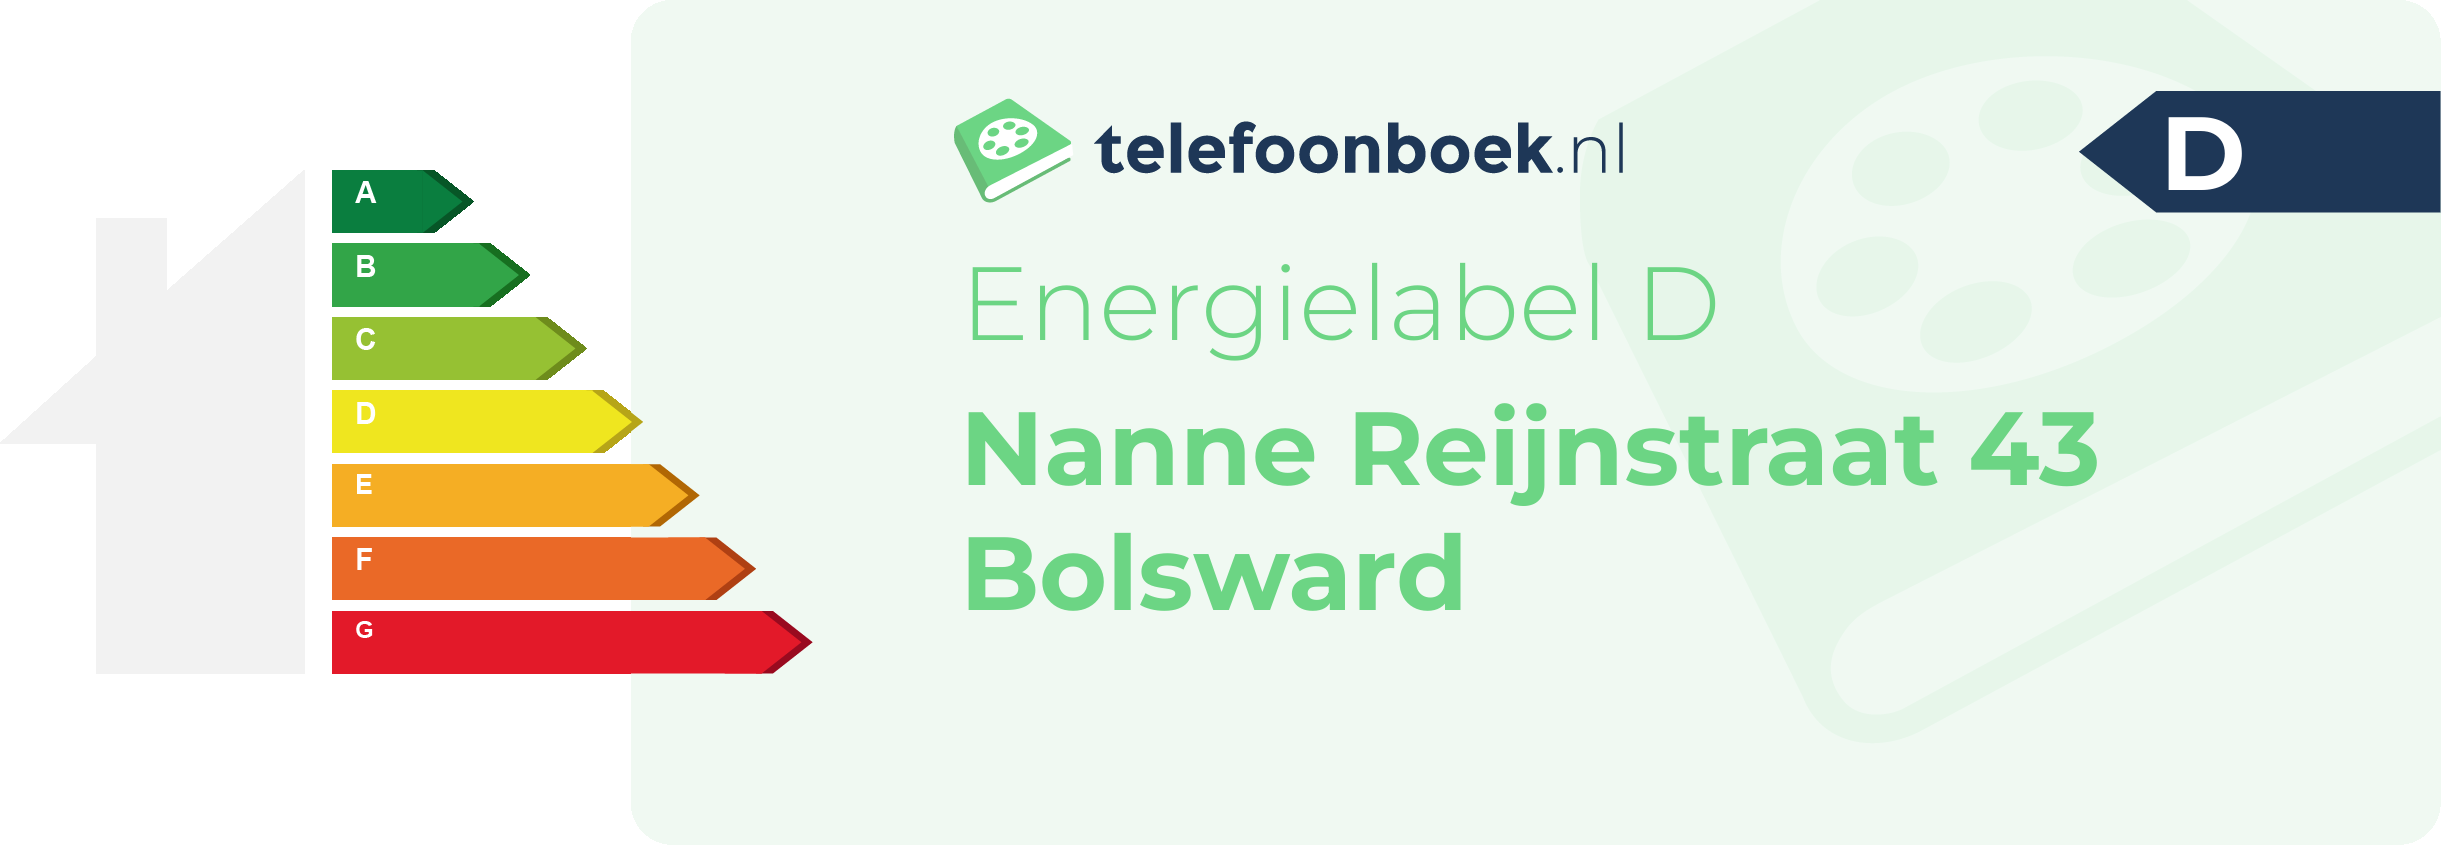 Energielabel Nanne Reijnstraat 43 Bolsward